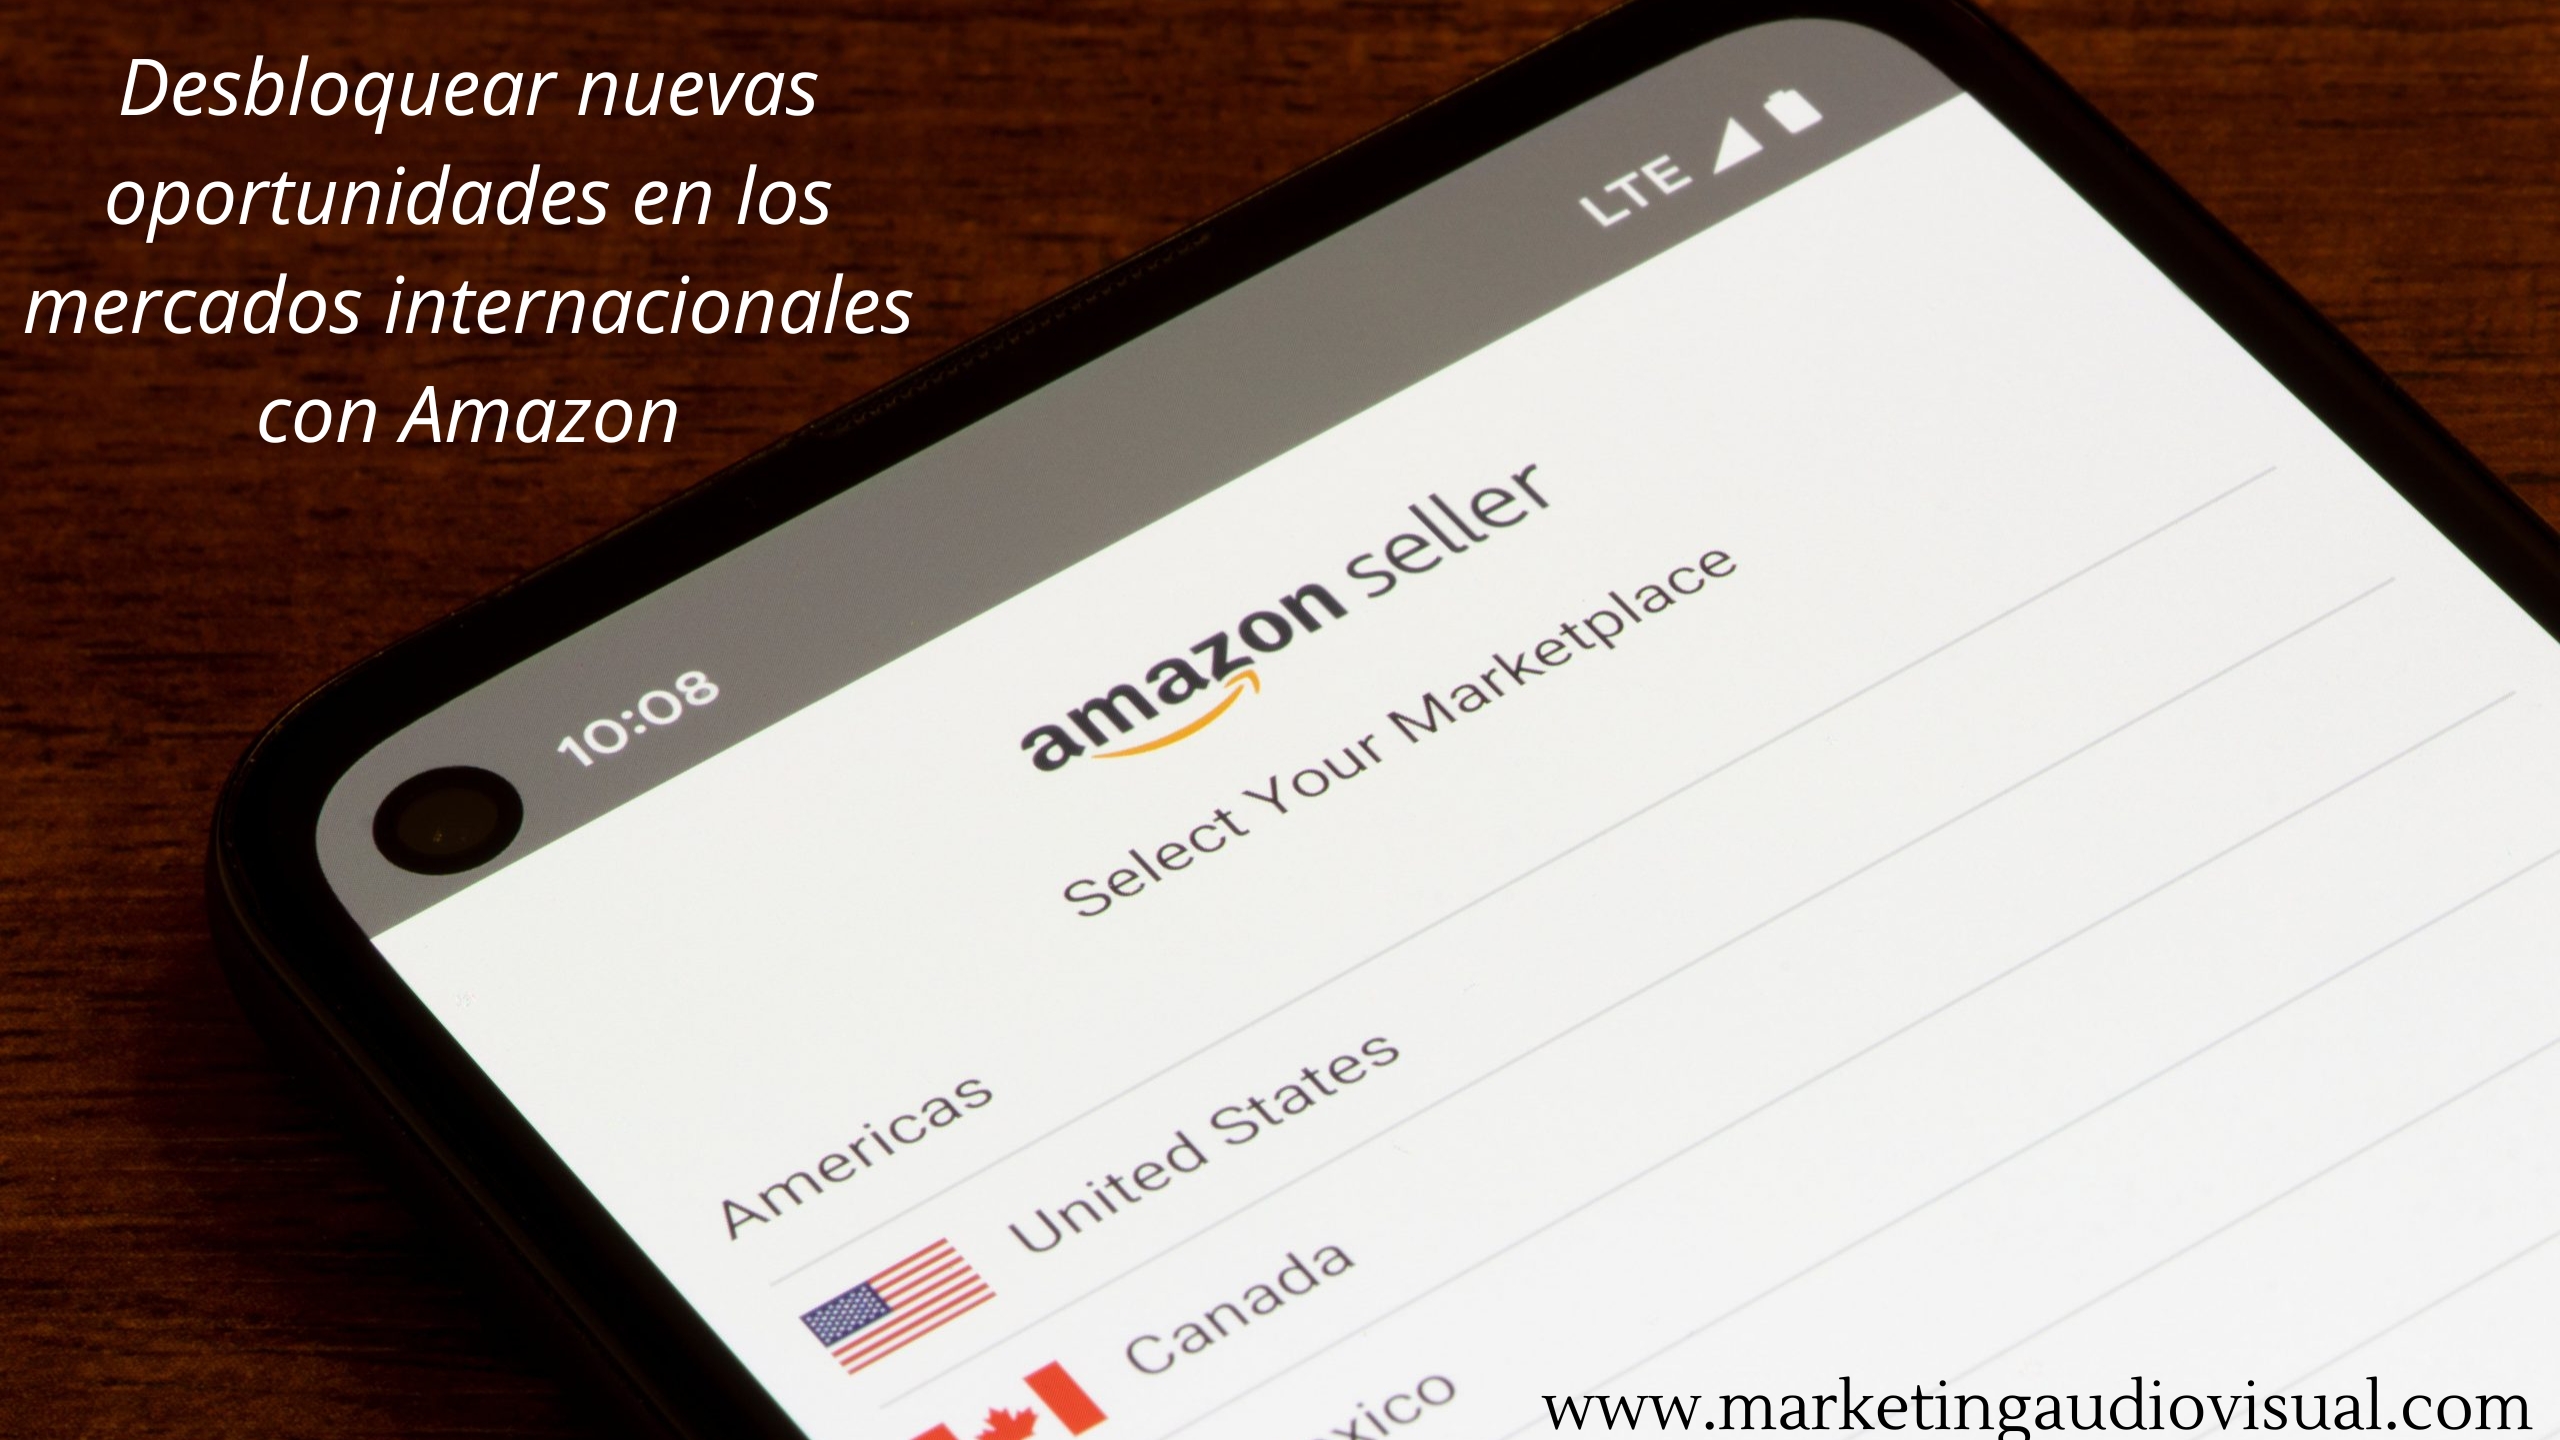 Desbloquear nuevas oportunidades en los mercados internacionales con Amazon